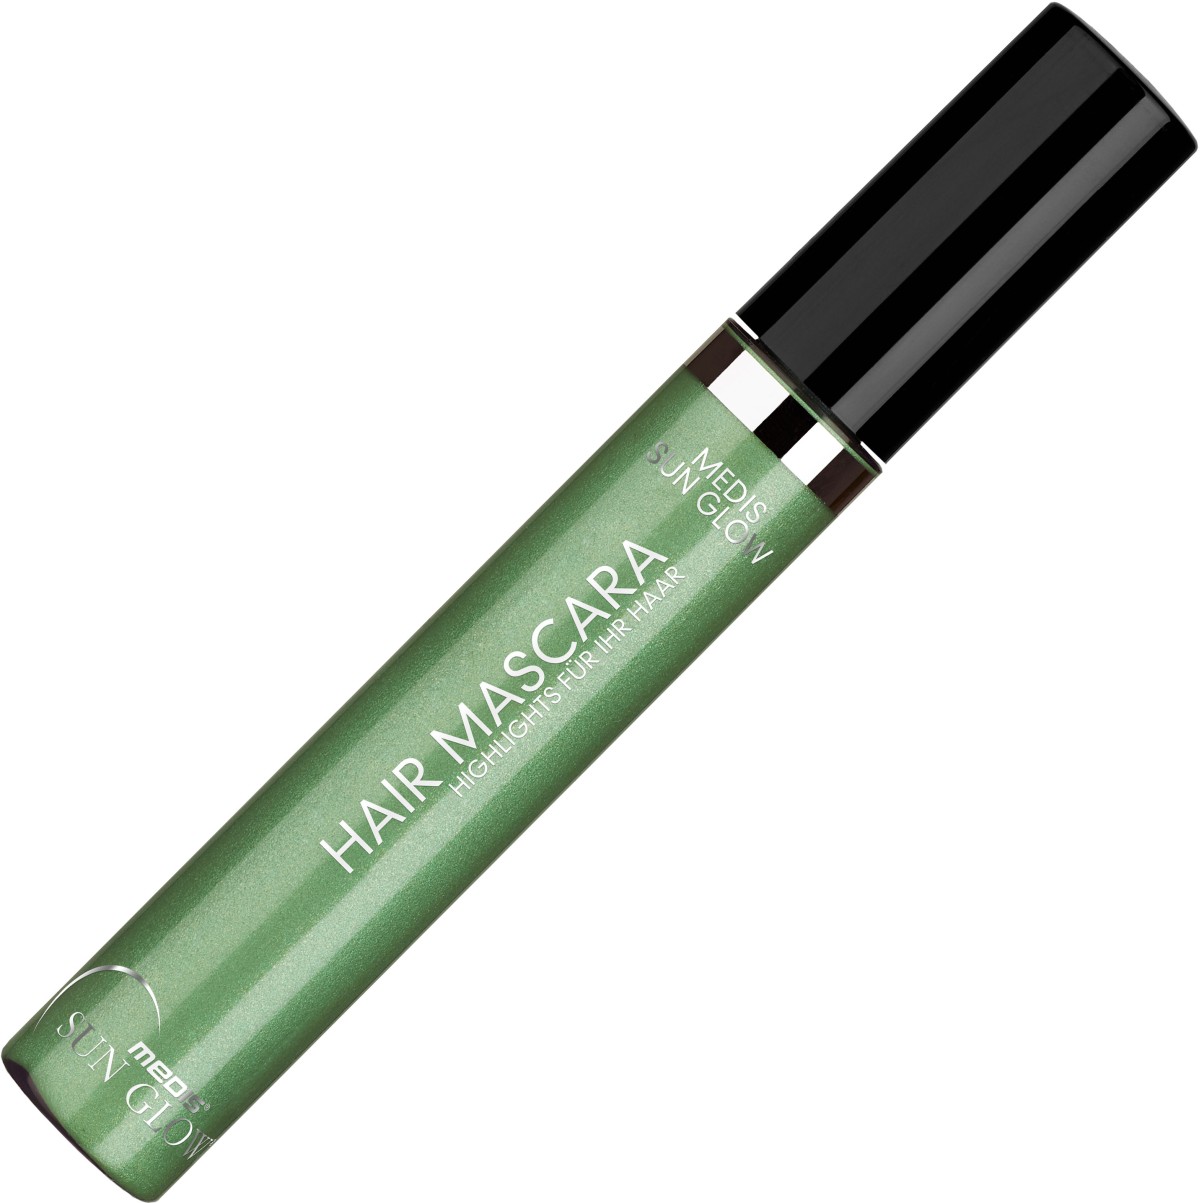  Medis Sun Glow Mascara vert pour cheveux 